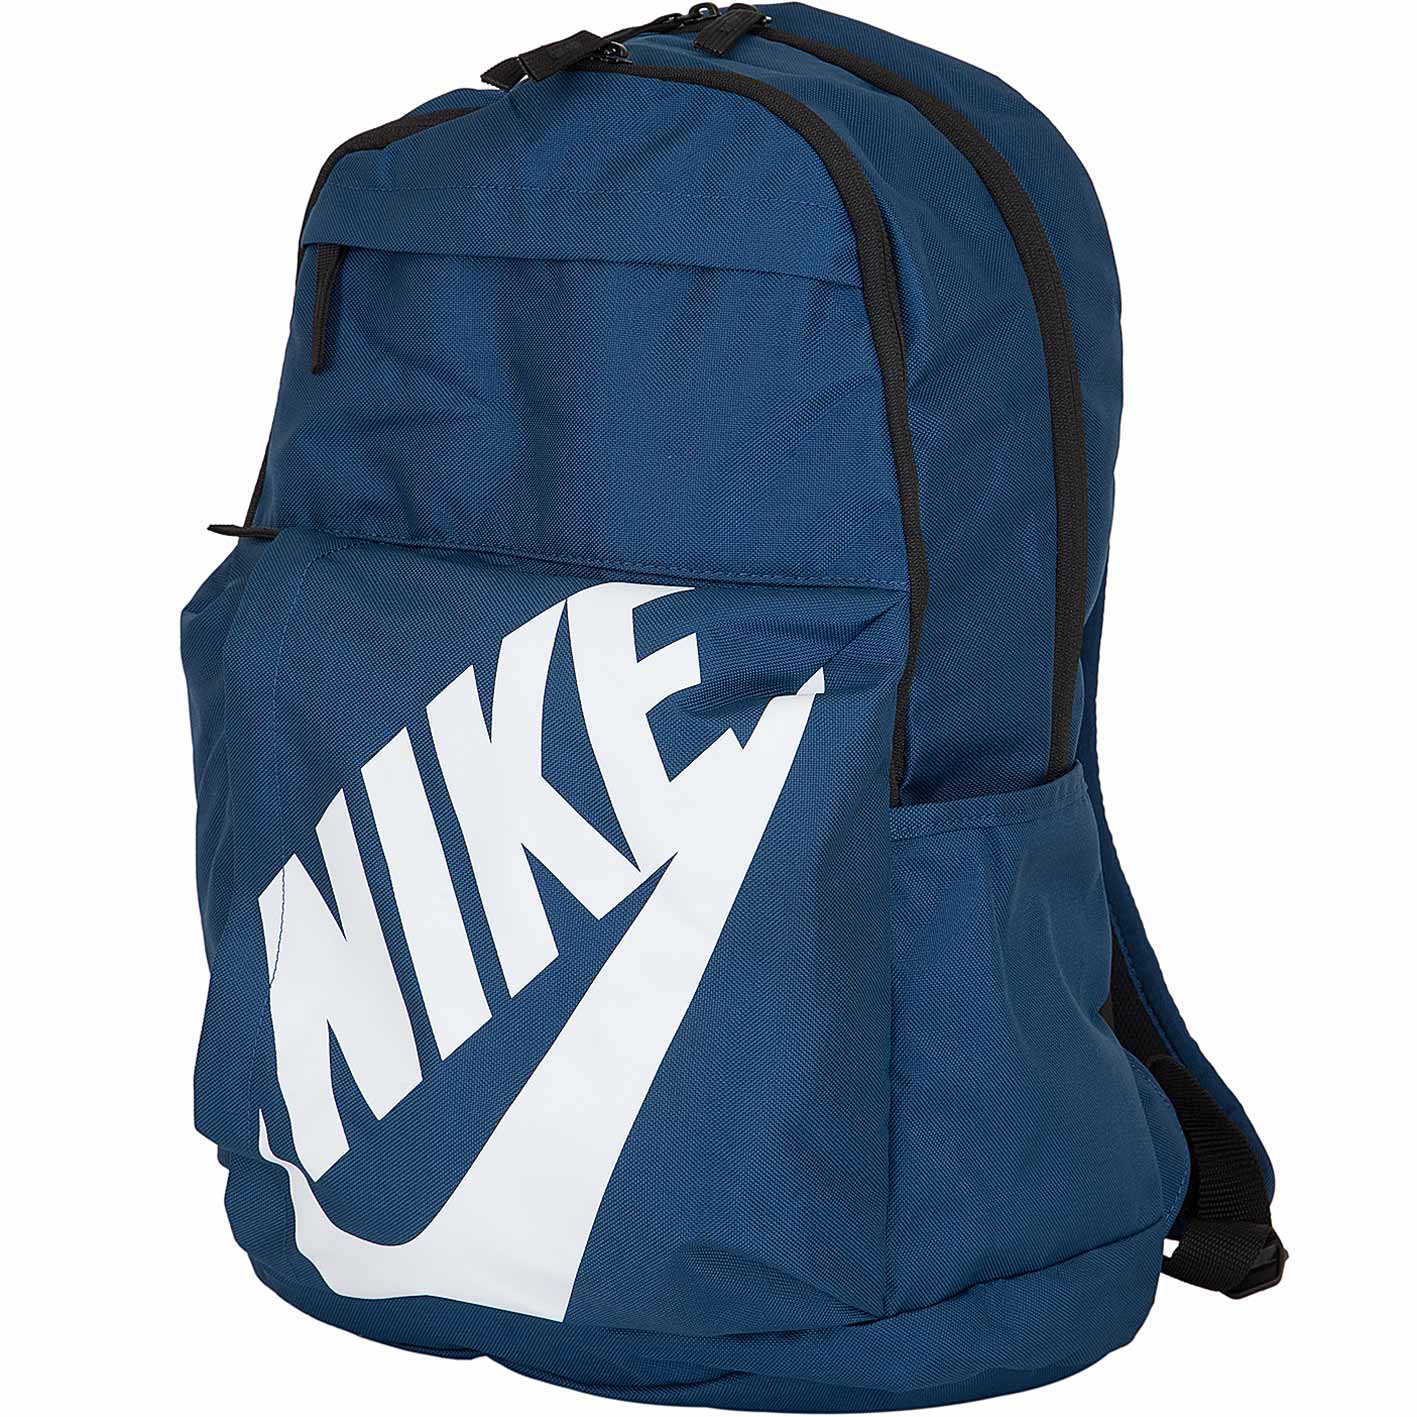 ☆ Nike Rucksack Elemental blau/weiß - hier bestellen!